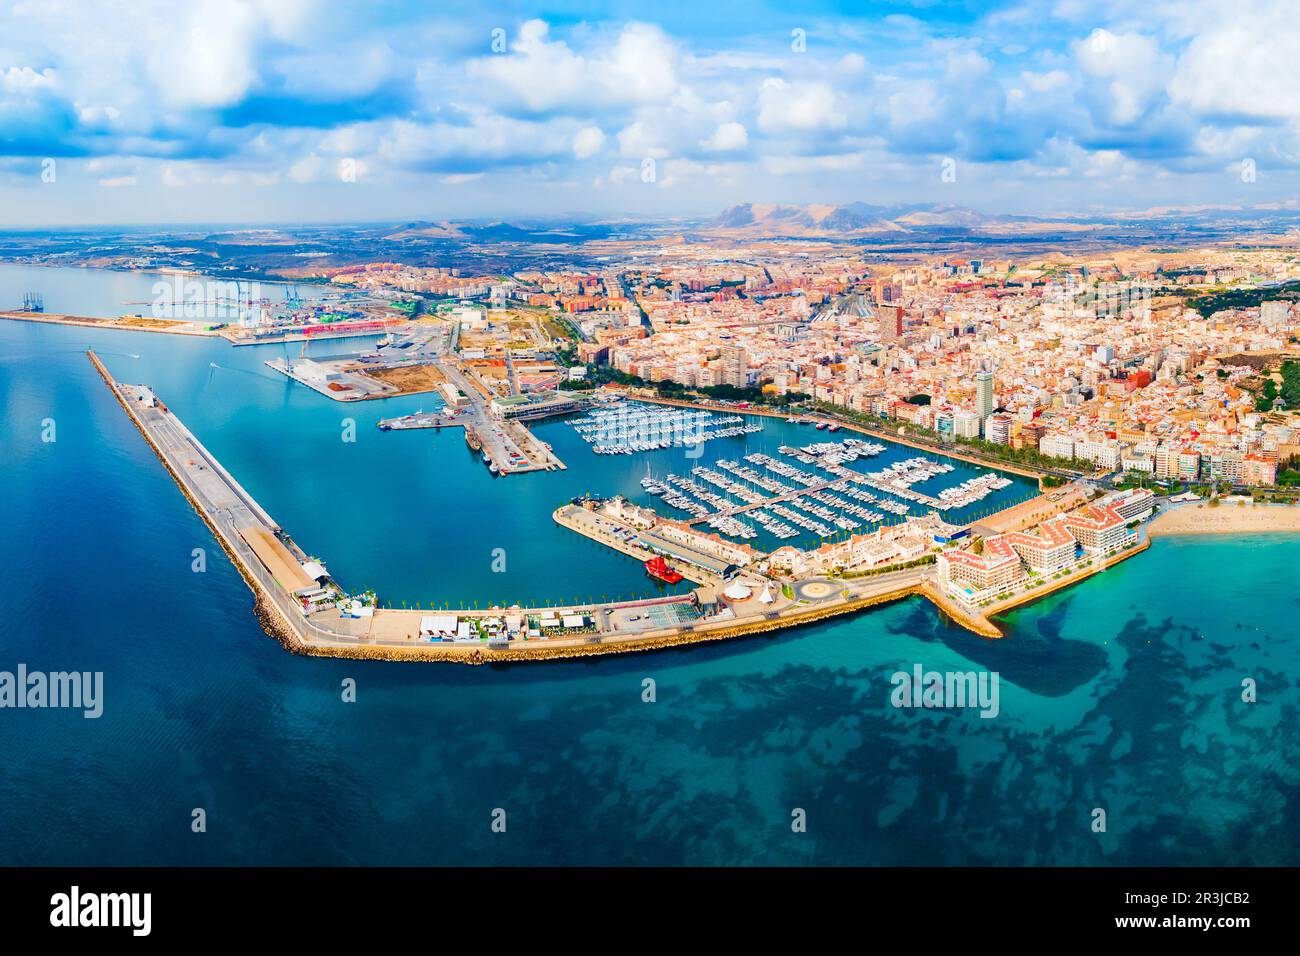 Port de la ville d'Alicante avec des bateaux et des yachts vue panoramique aérienne. Alicante est une ville de la région de Valence, en Espagne. Banque D'Images